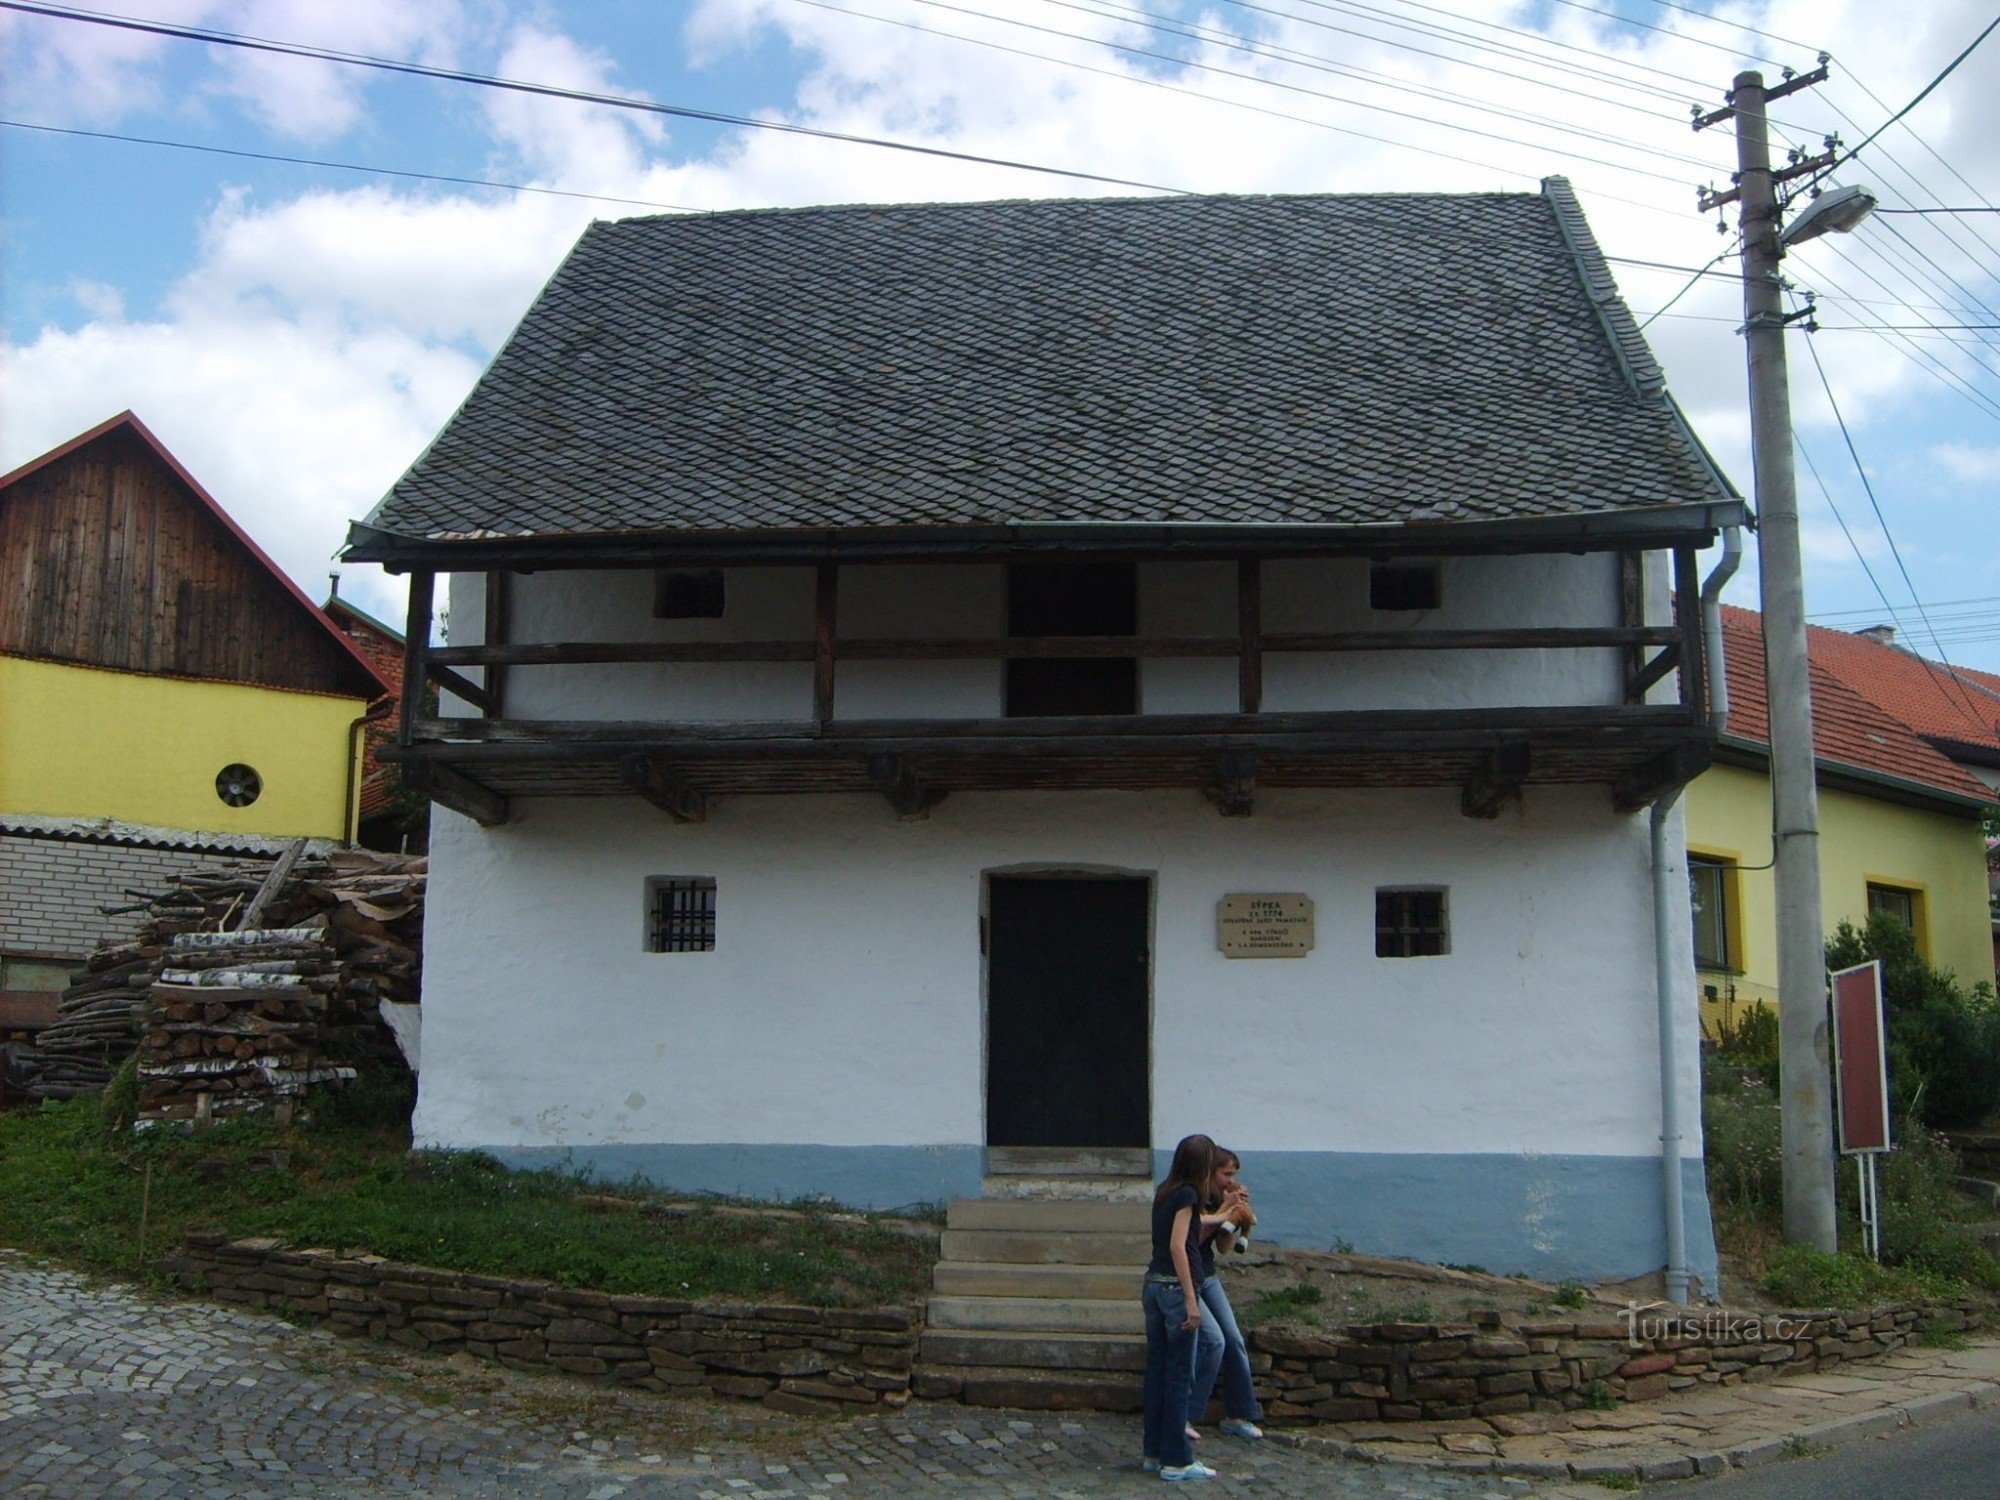 Sýpka - razstava JA Comeniusa in zgodovine vasi